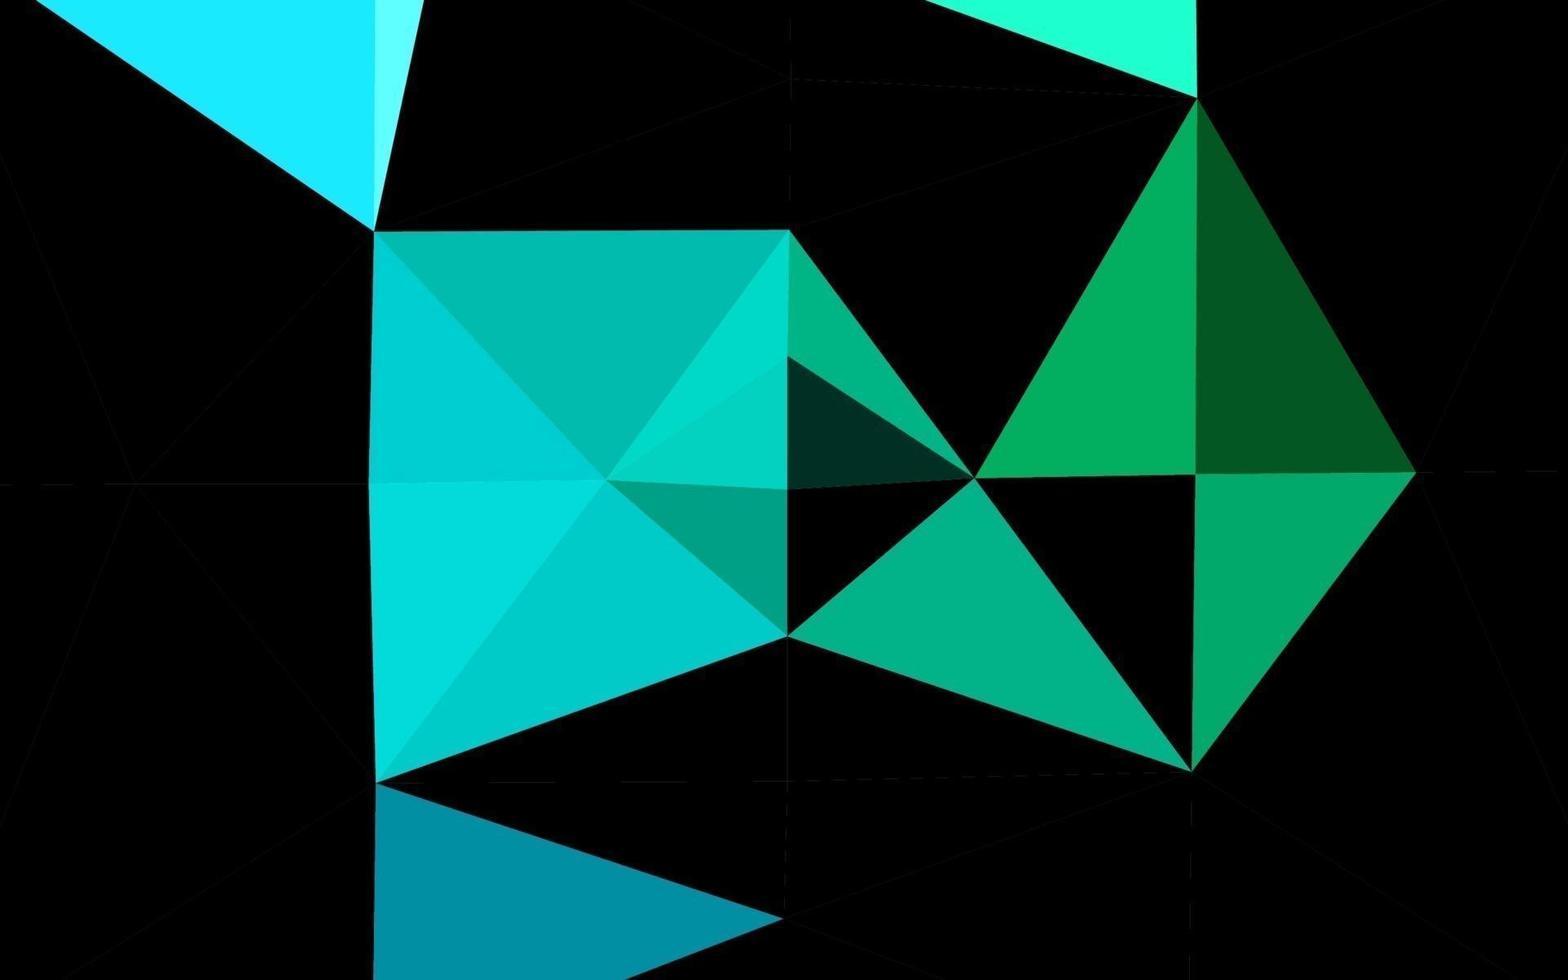 fundo poligonal do vetor azul, verde claro.